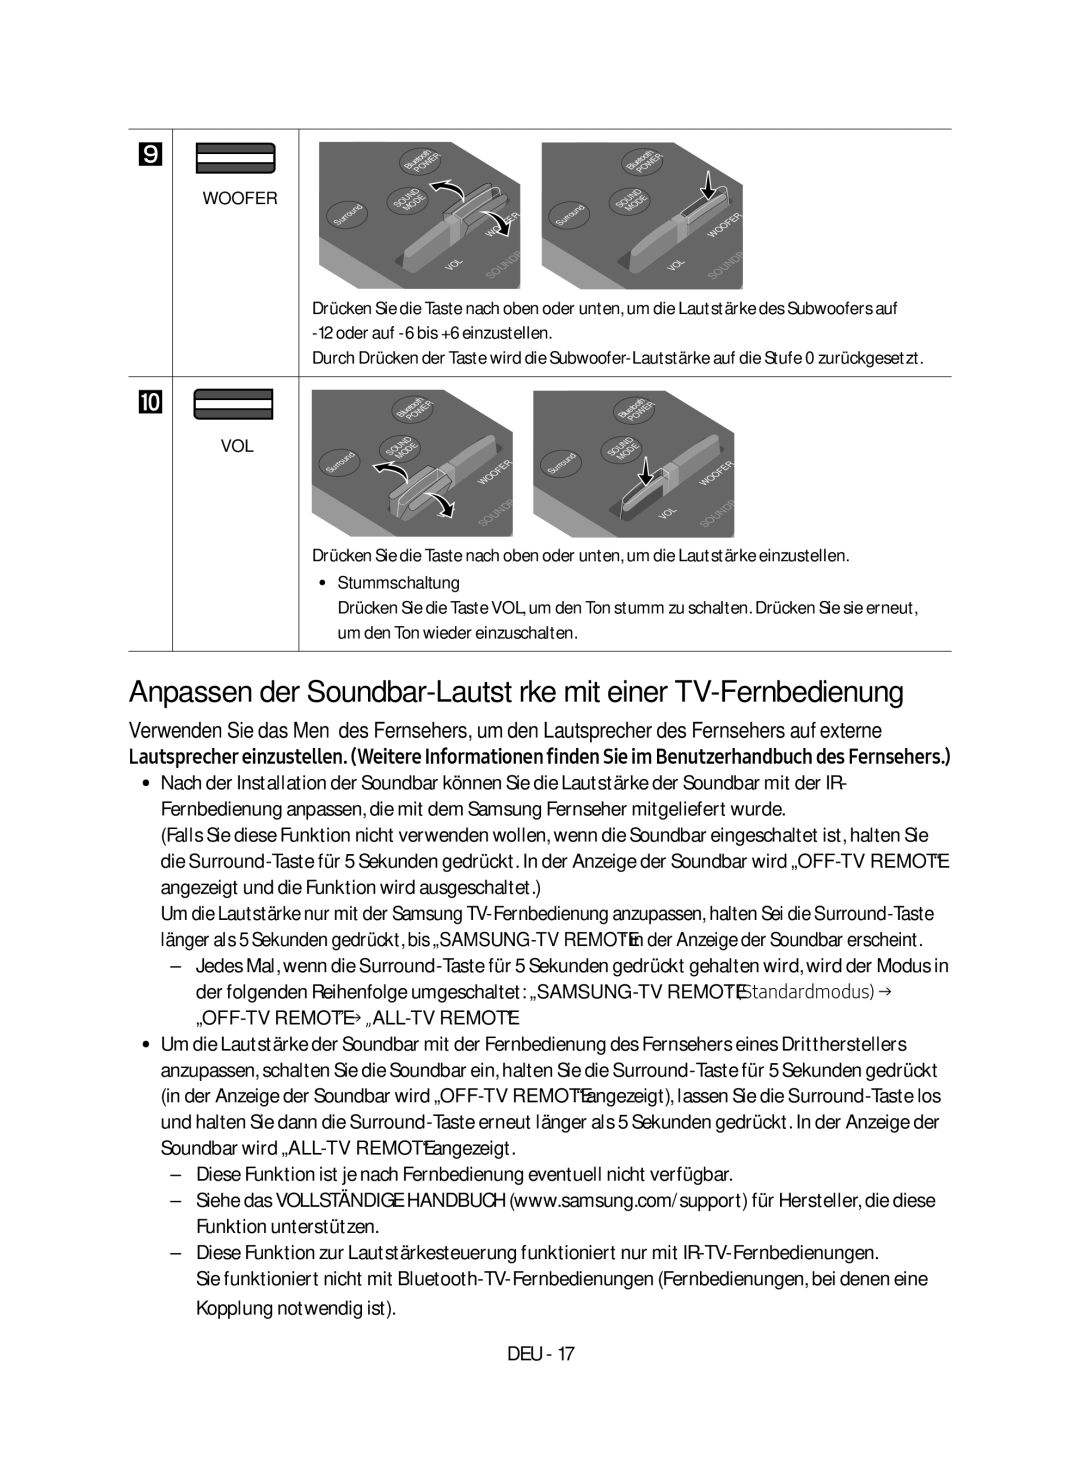 Samsung HW-M4500/EN manual Anpassen der Soundbar-Lautstärke mit einer TV-Fernbedienung, Stummschaltung 